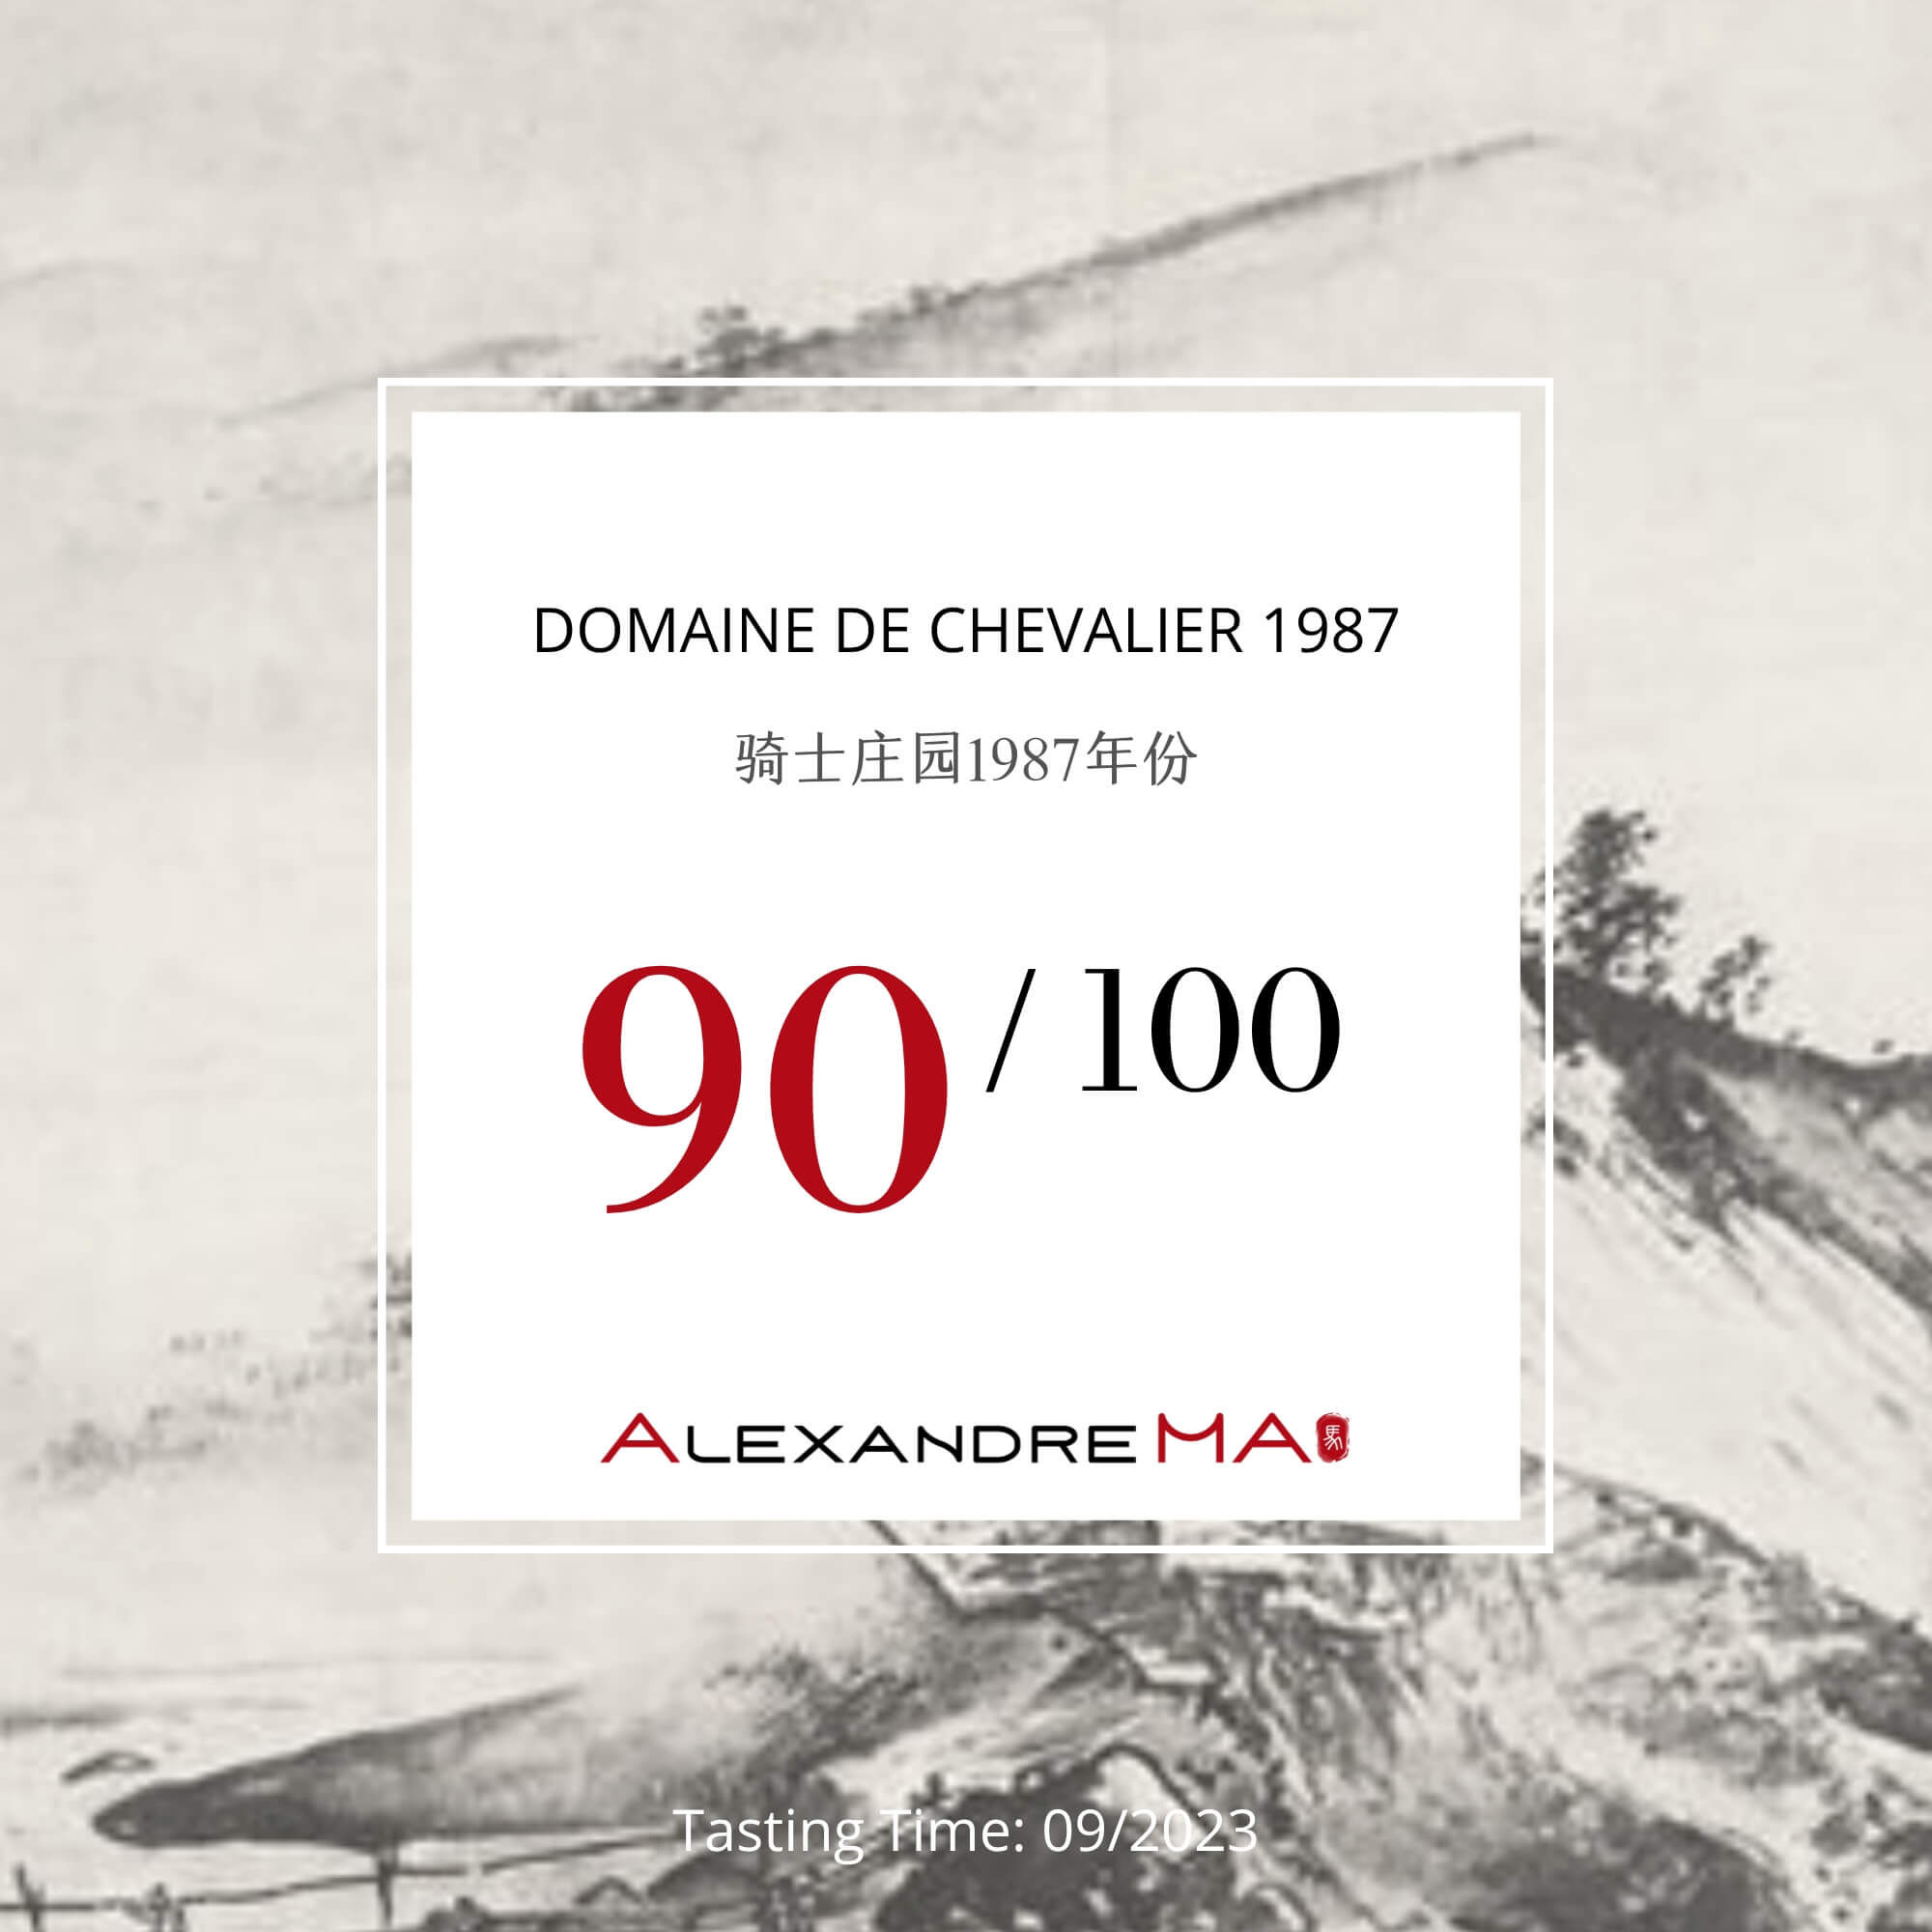 Domaine de Chevalier 1987 - Alexandre MA